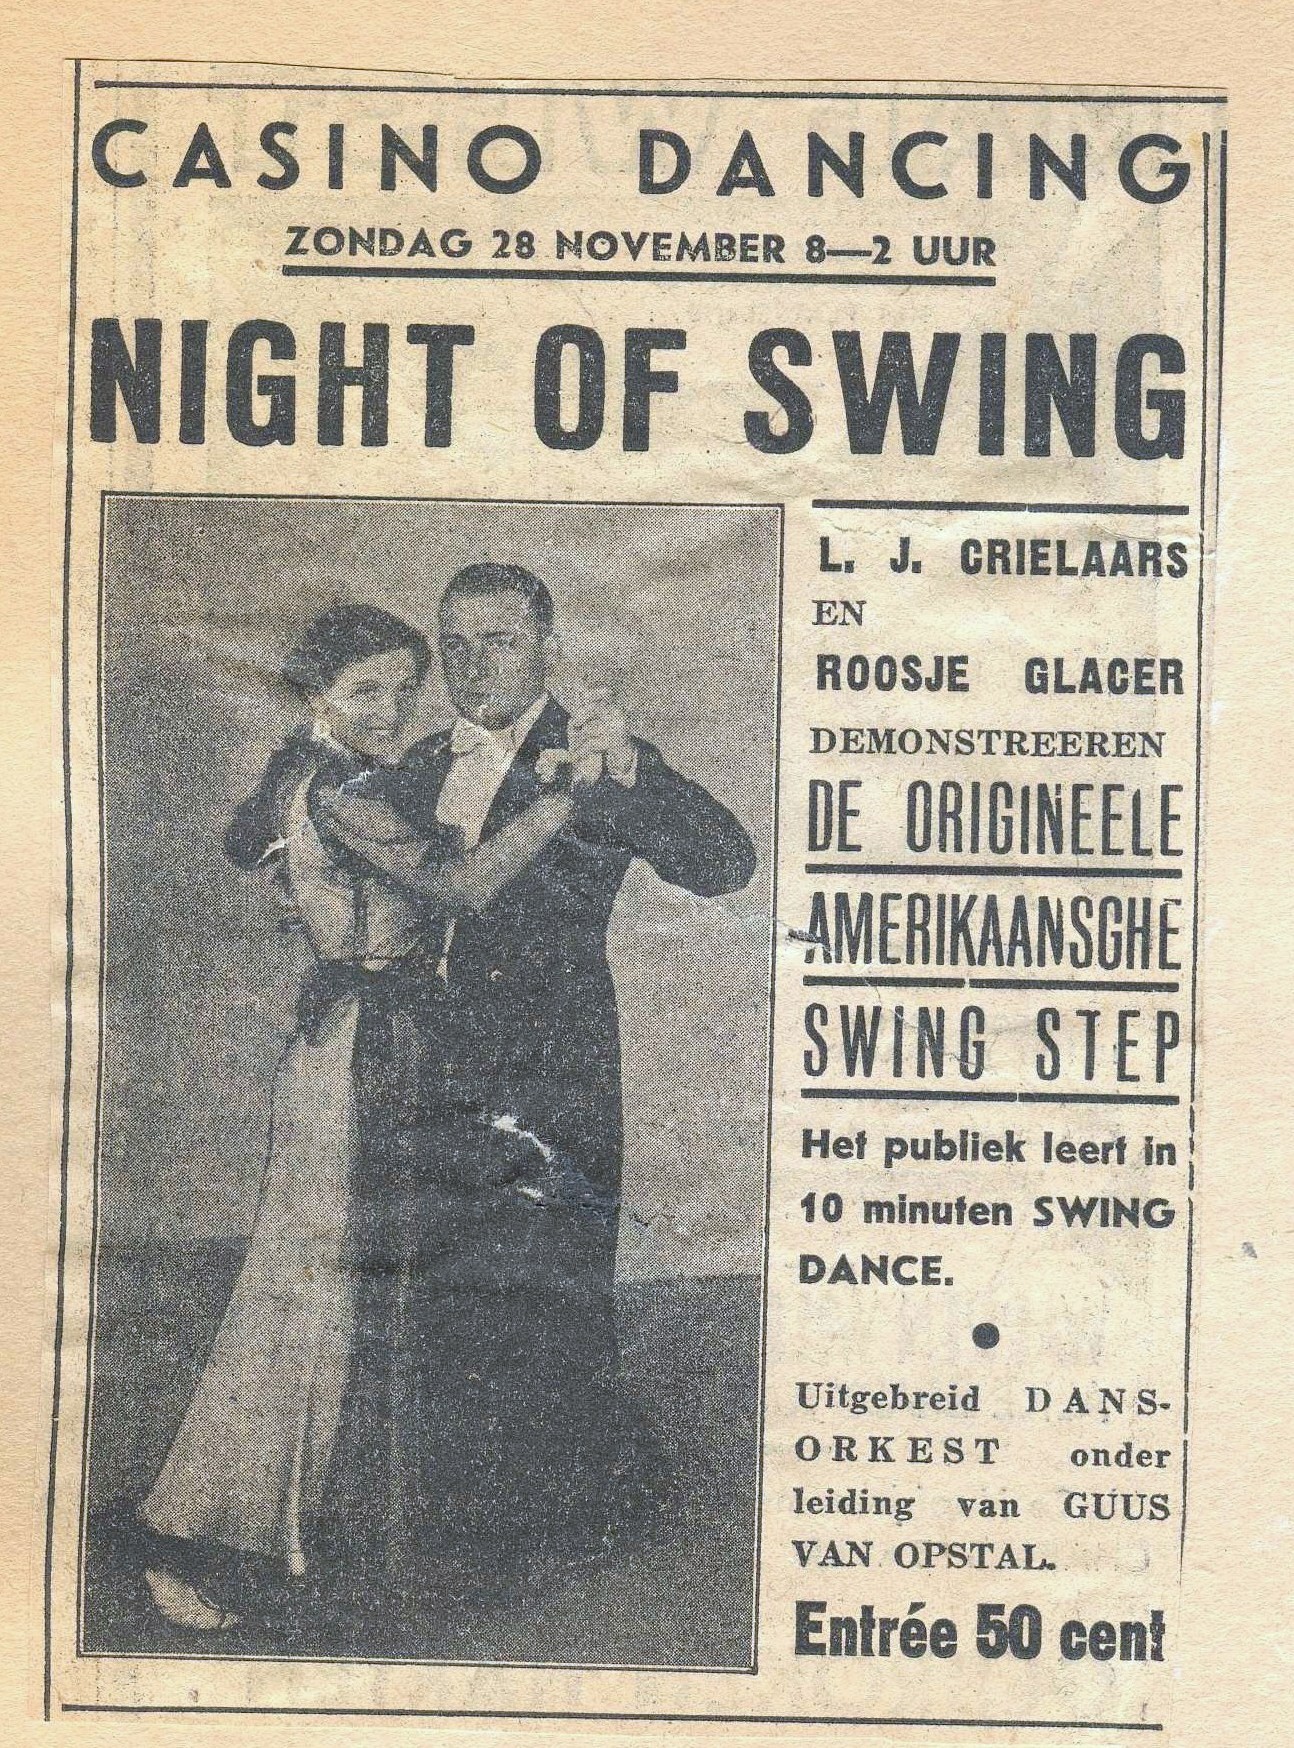 1938 Tante Roosje in newspaper night of swing
